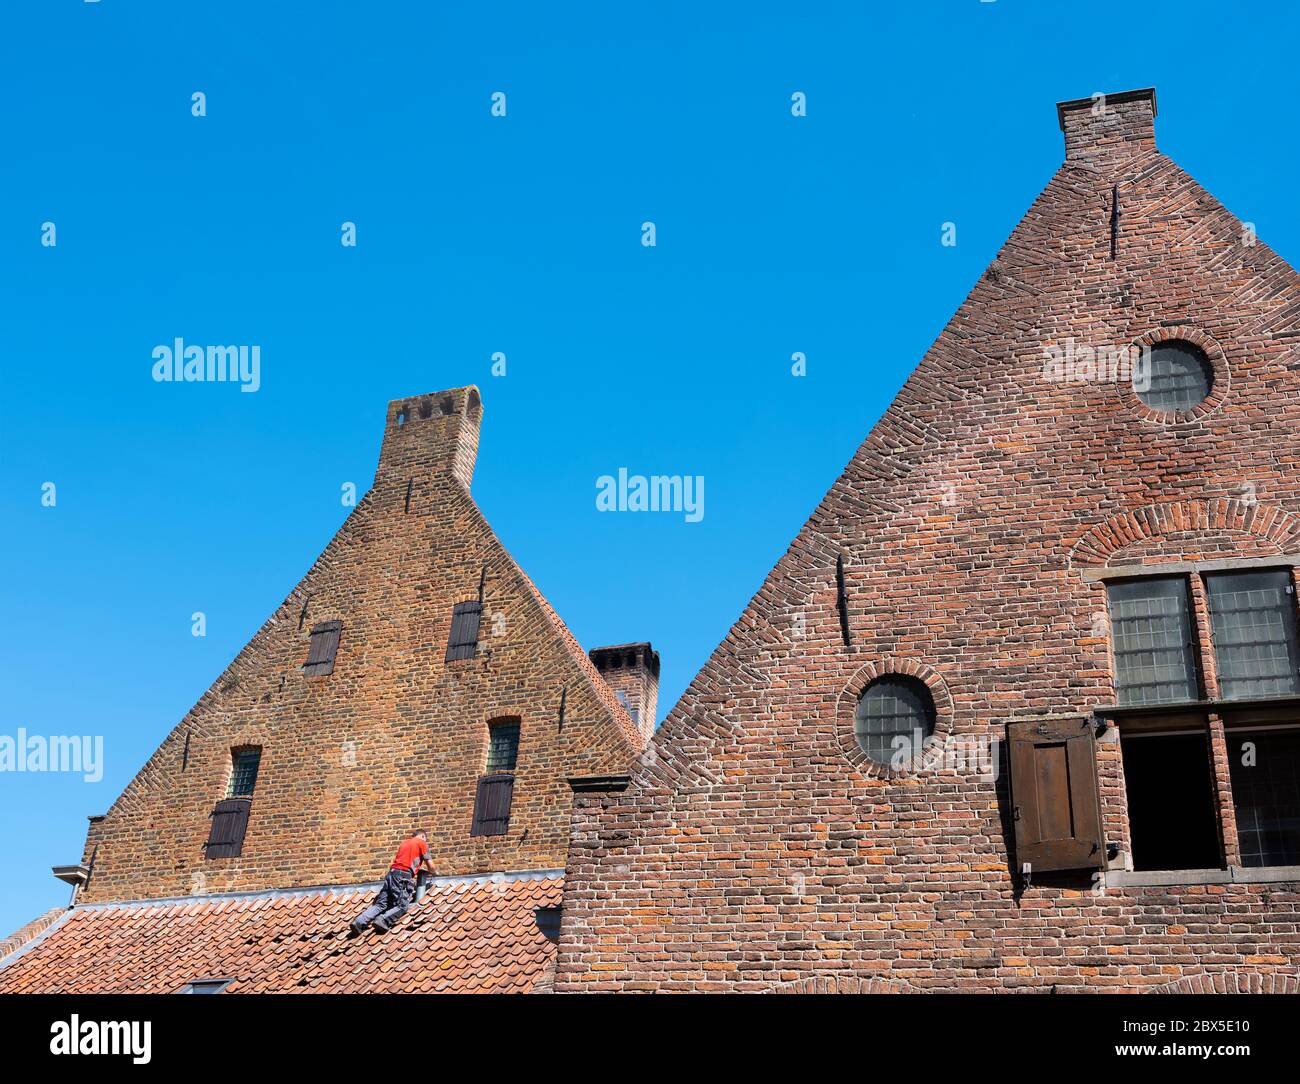 uomo in camicia rossa ripara l'edificio medievale nel centro storico di zutphen, nei paesi bassi Foto Stock